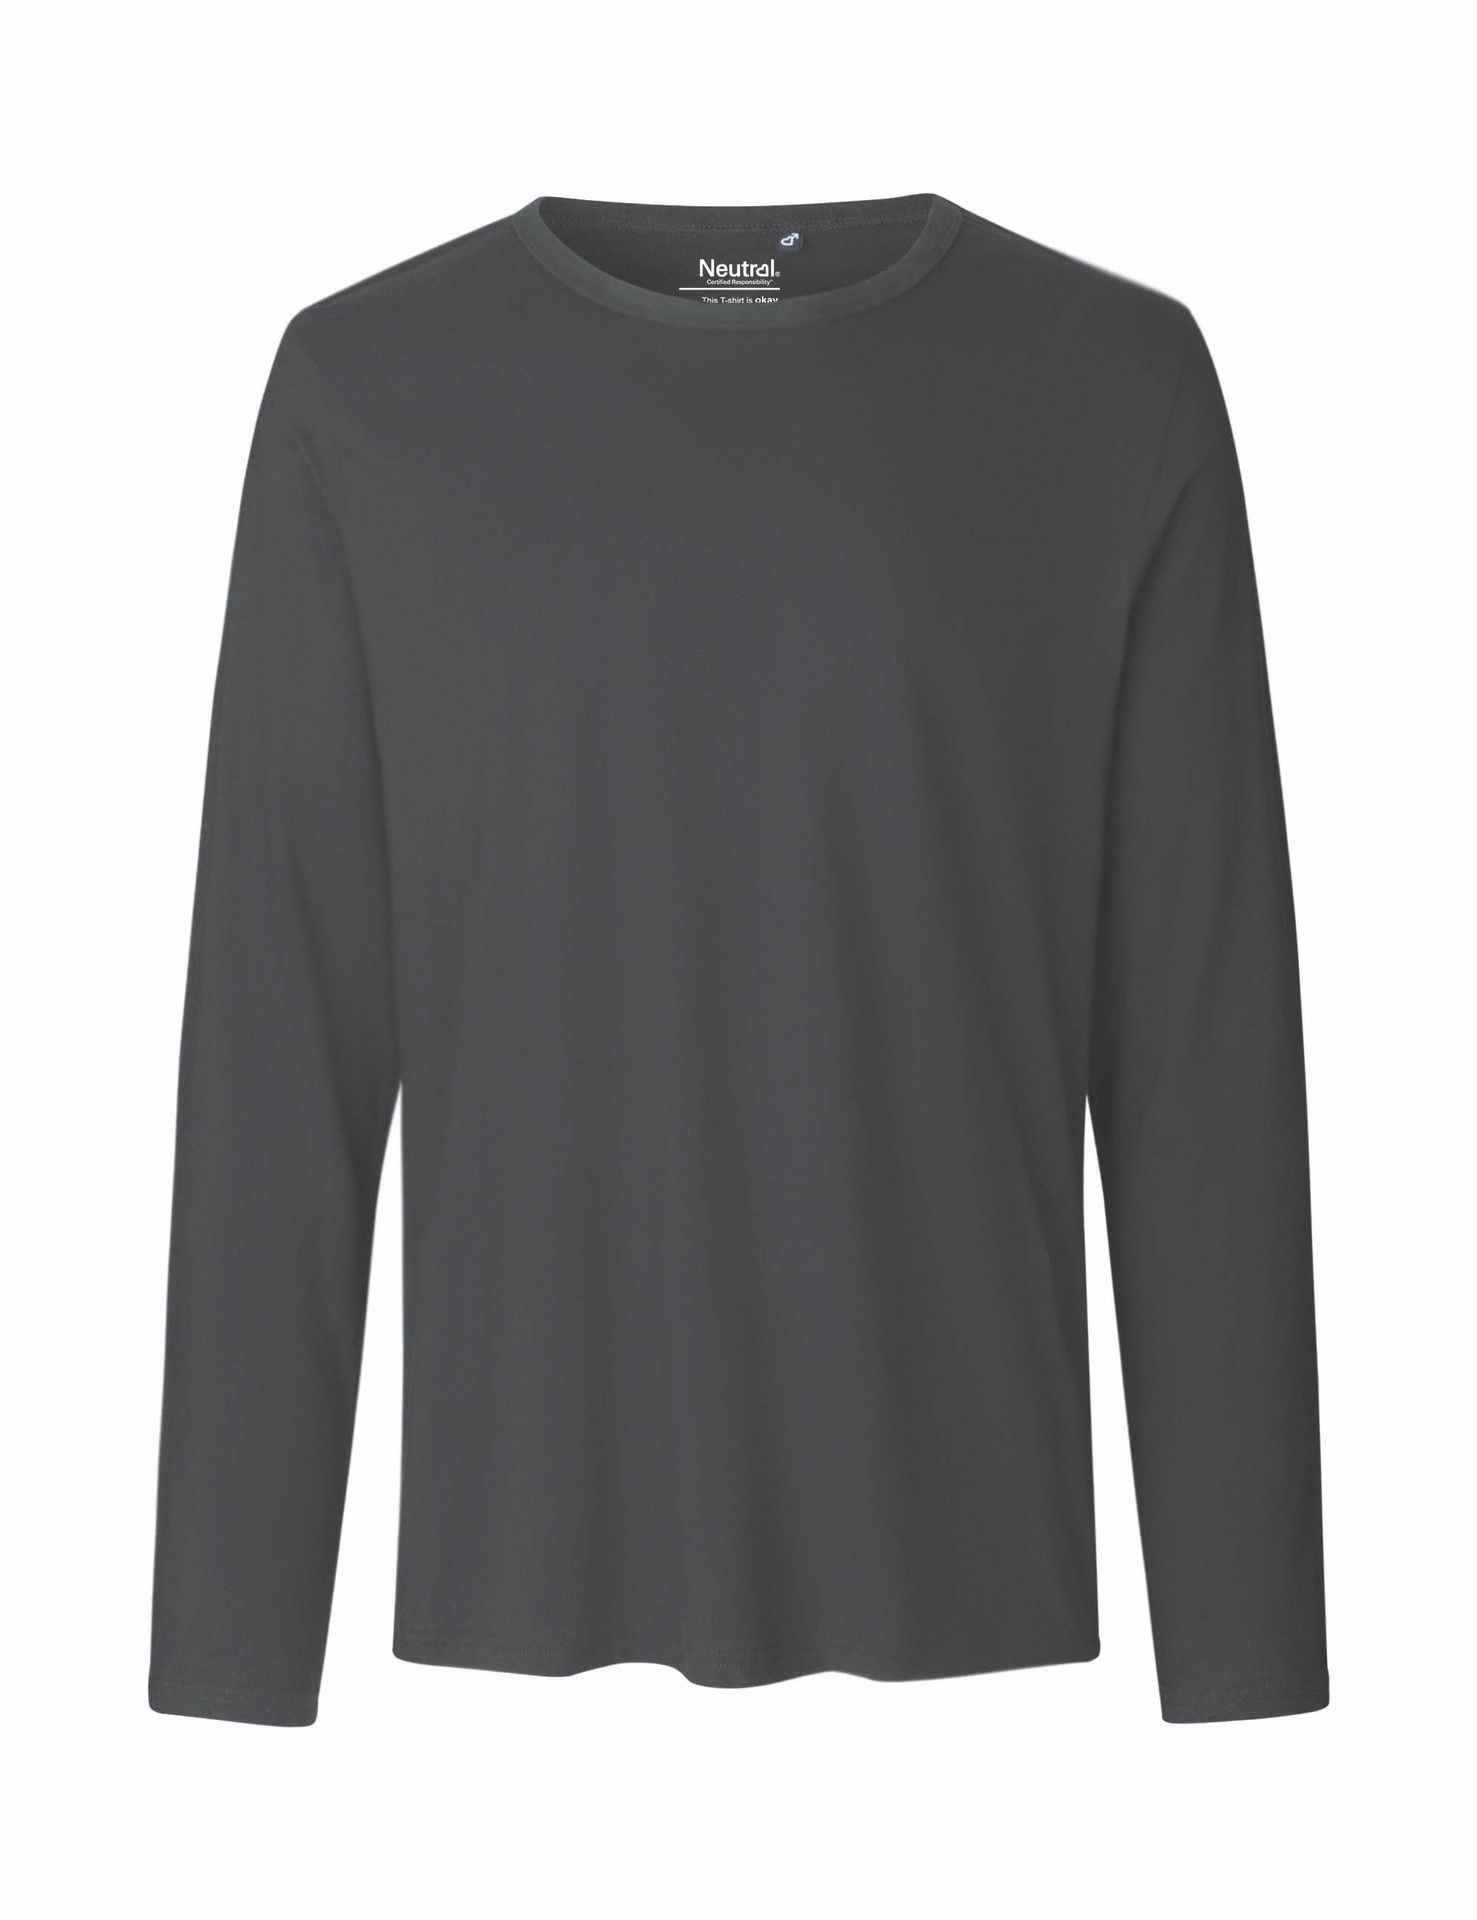 [PR/02363] Mens Long Sleeve T-Shirt (Charcoal 06, M)